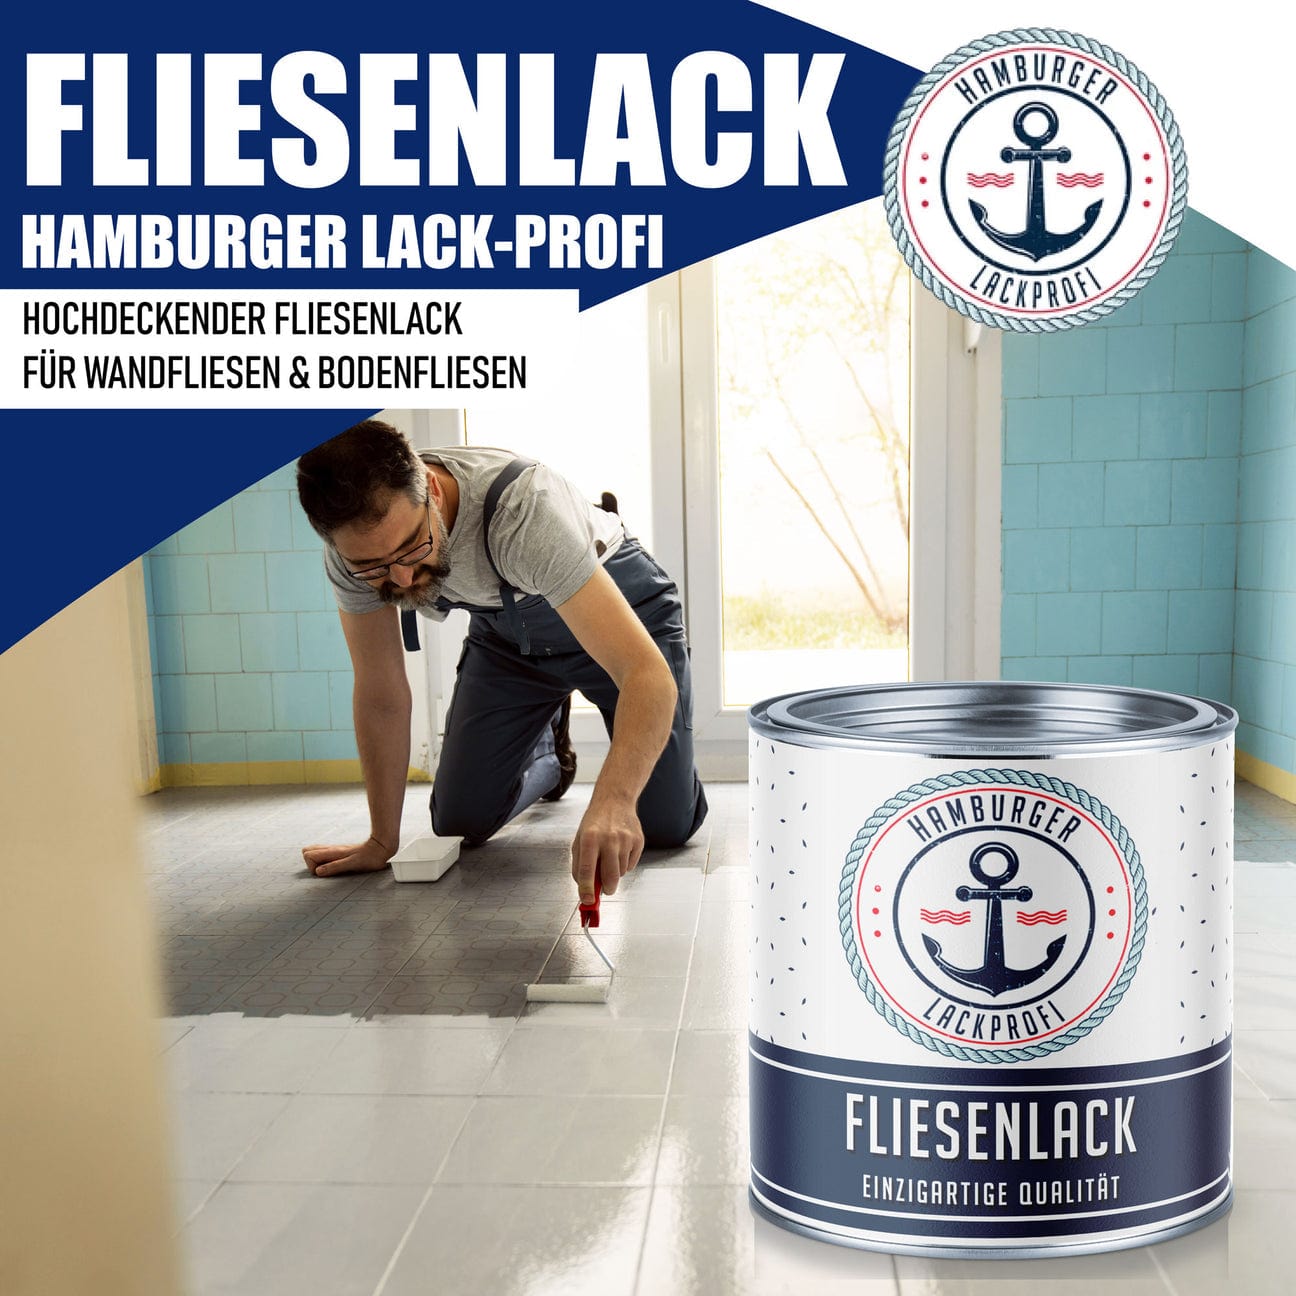 Hamburger Lack-Profi Hamburger Lack-Profi Fliesenlack Graubraun RAL 8019 - hochdeckende Fliesenfarbe Braun